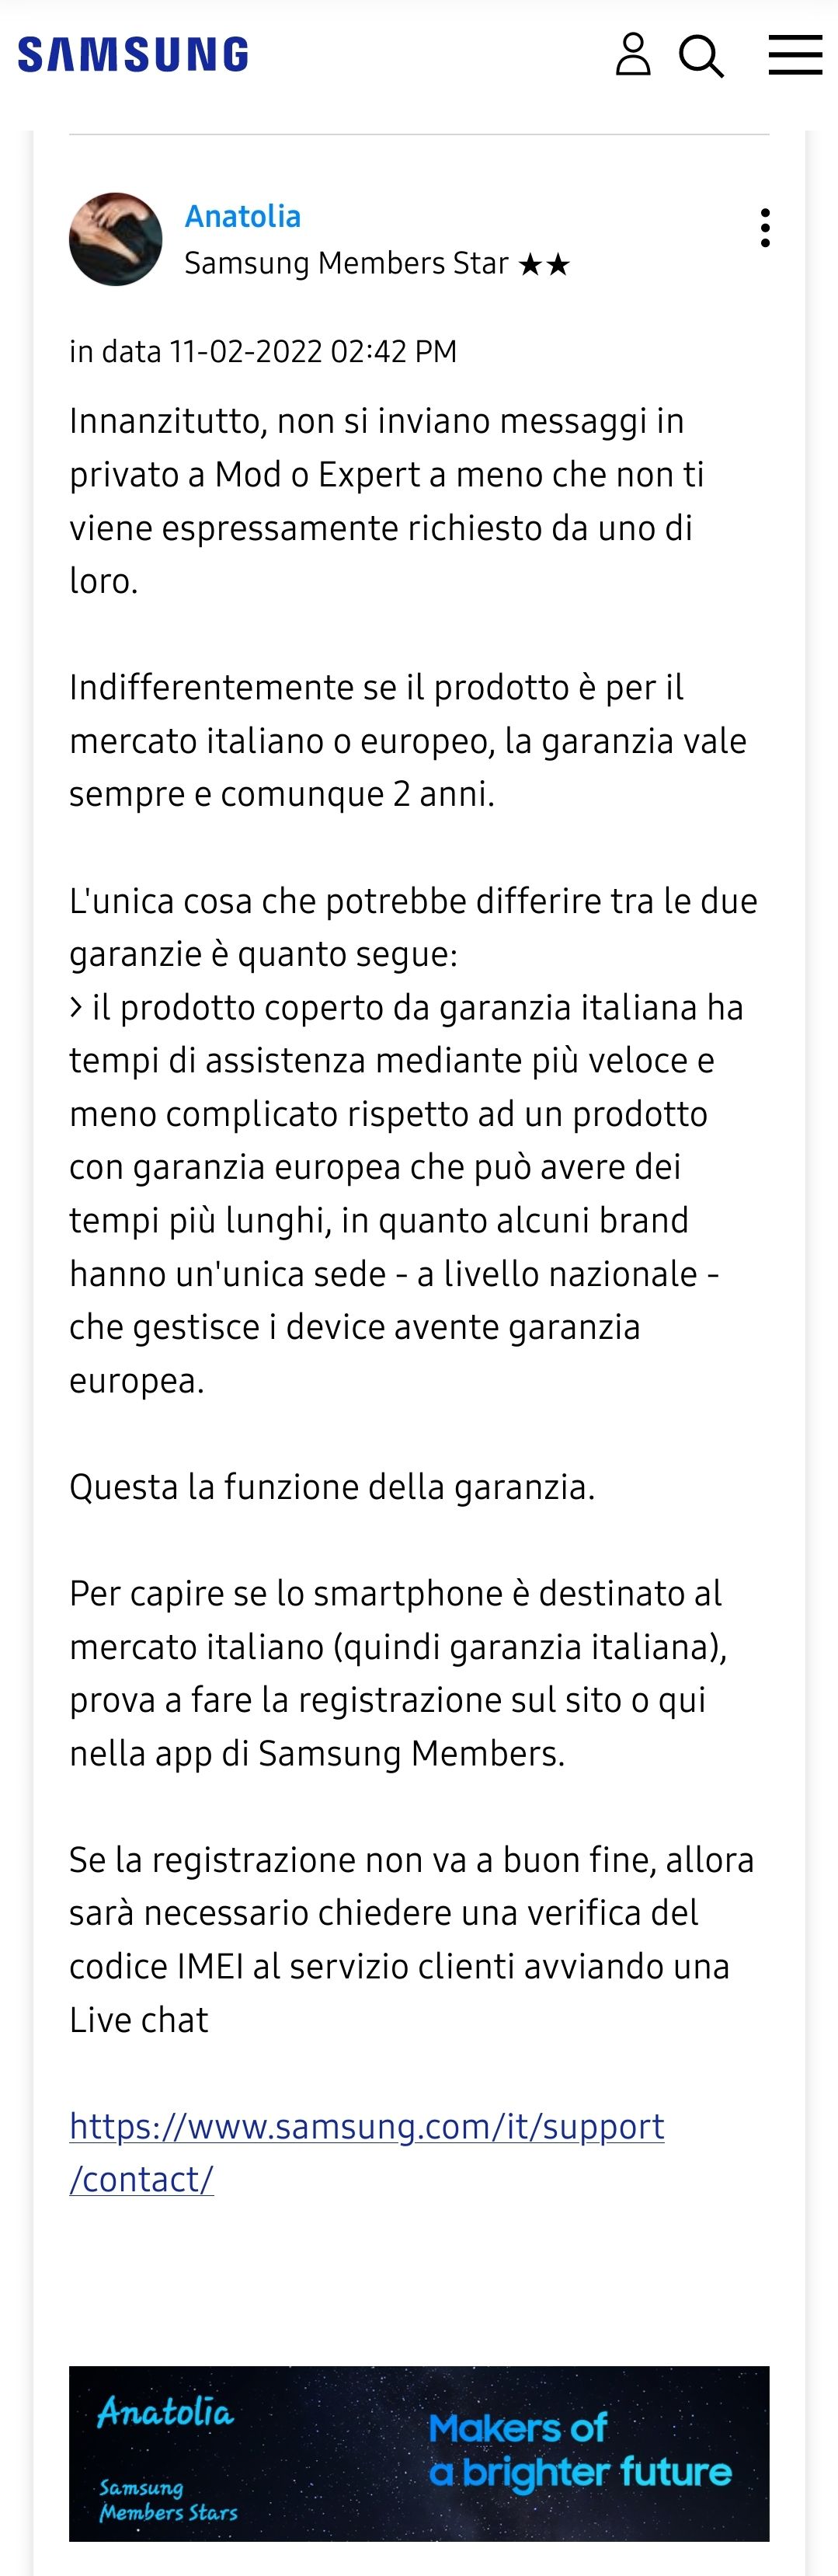 Provenienza smartphone Europa o Italia e relativa garanzia - Samsung  Community